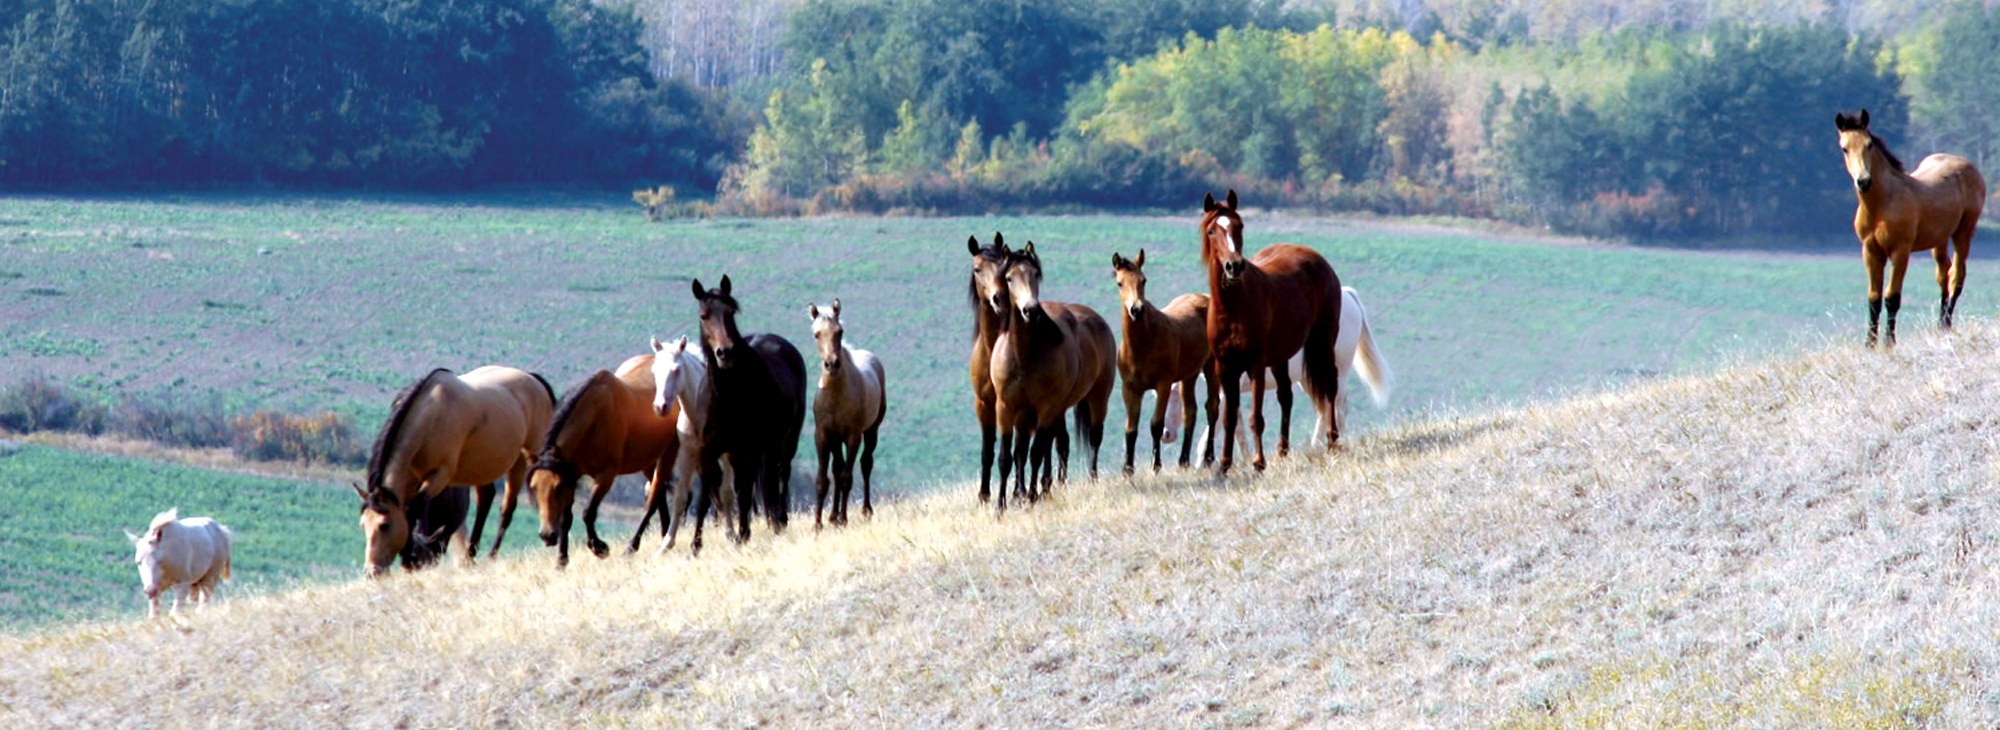 Herd of Horses on the Hillside